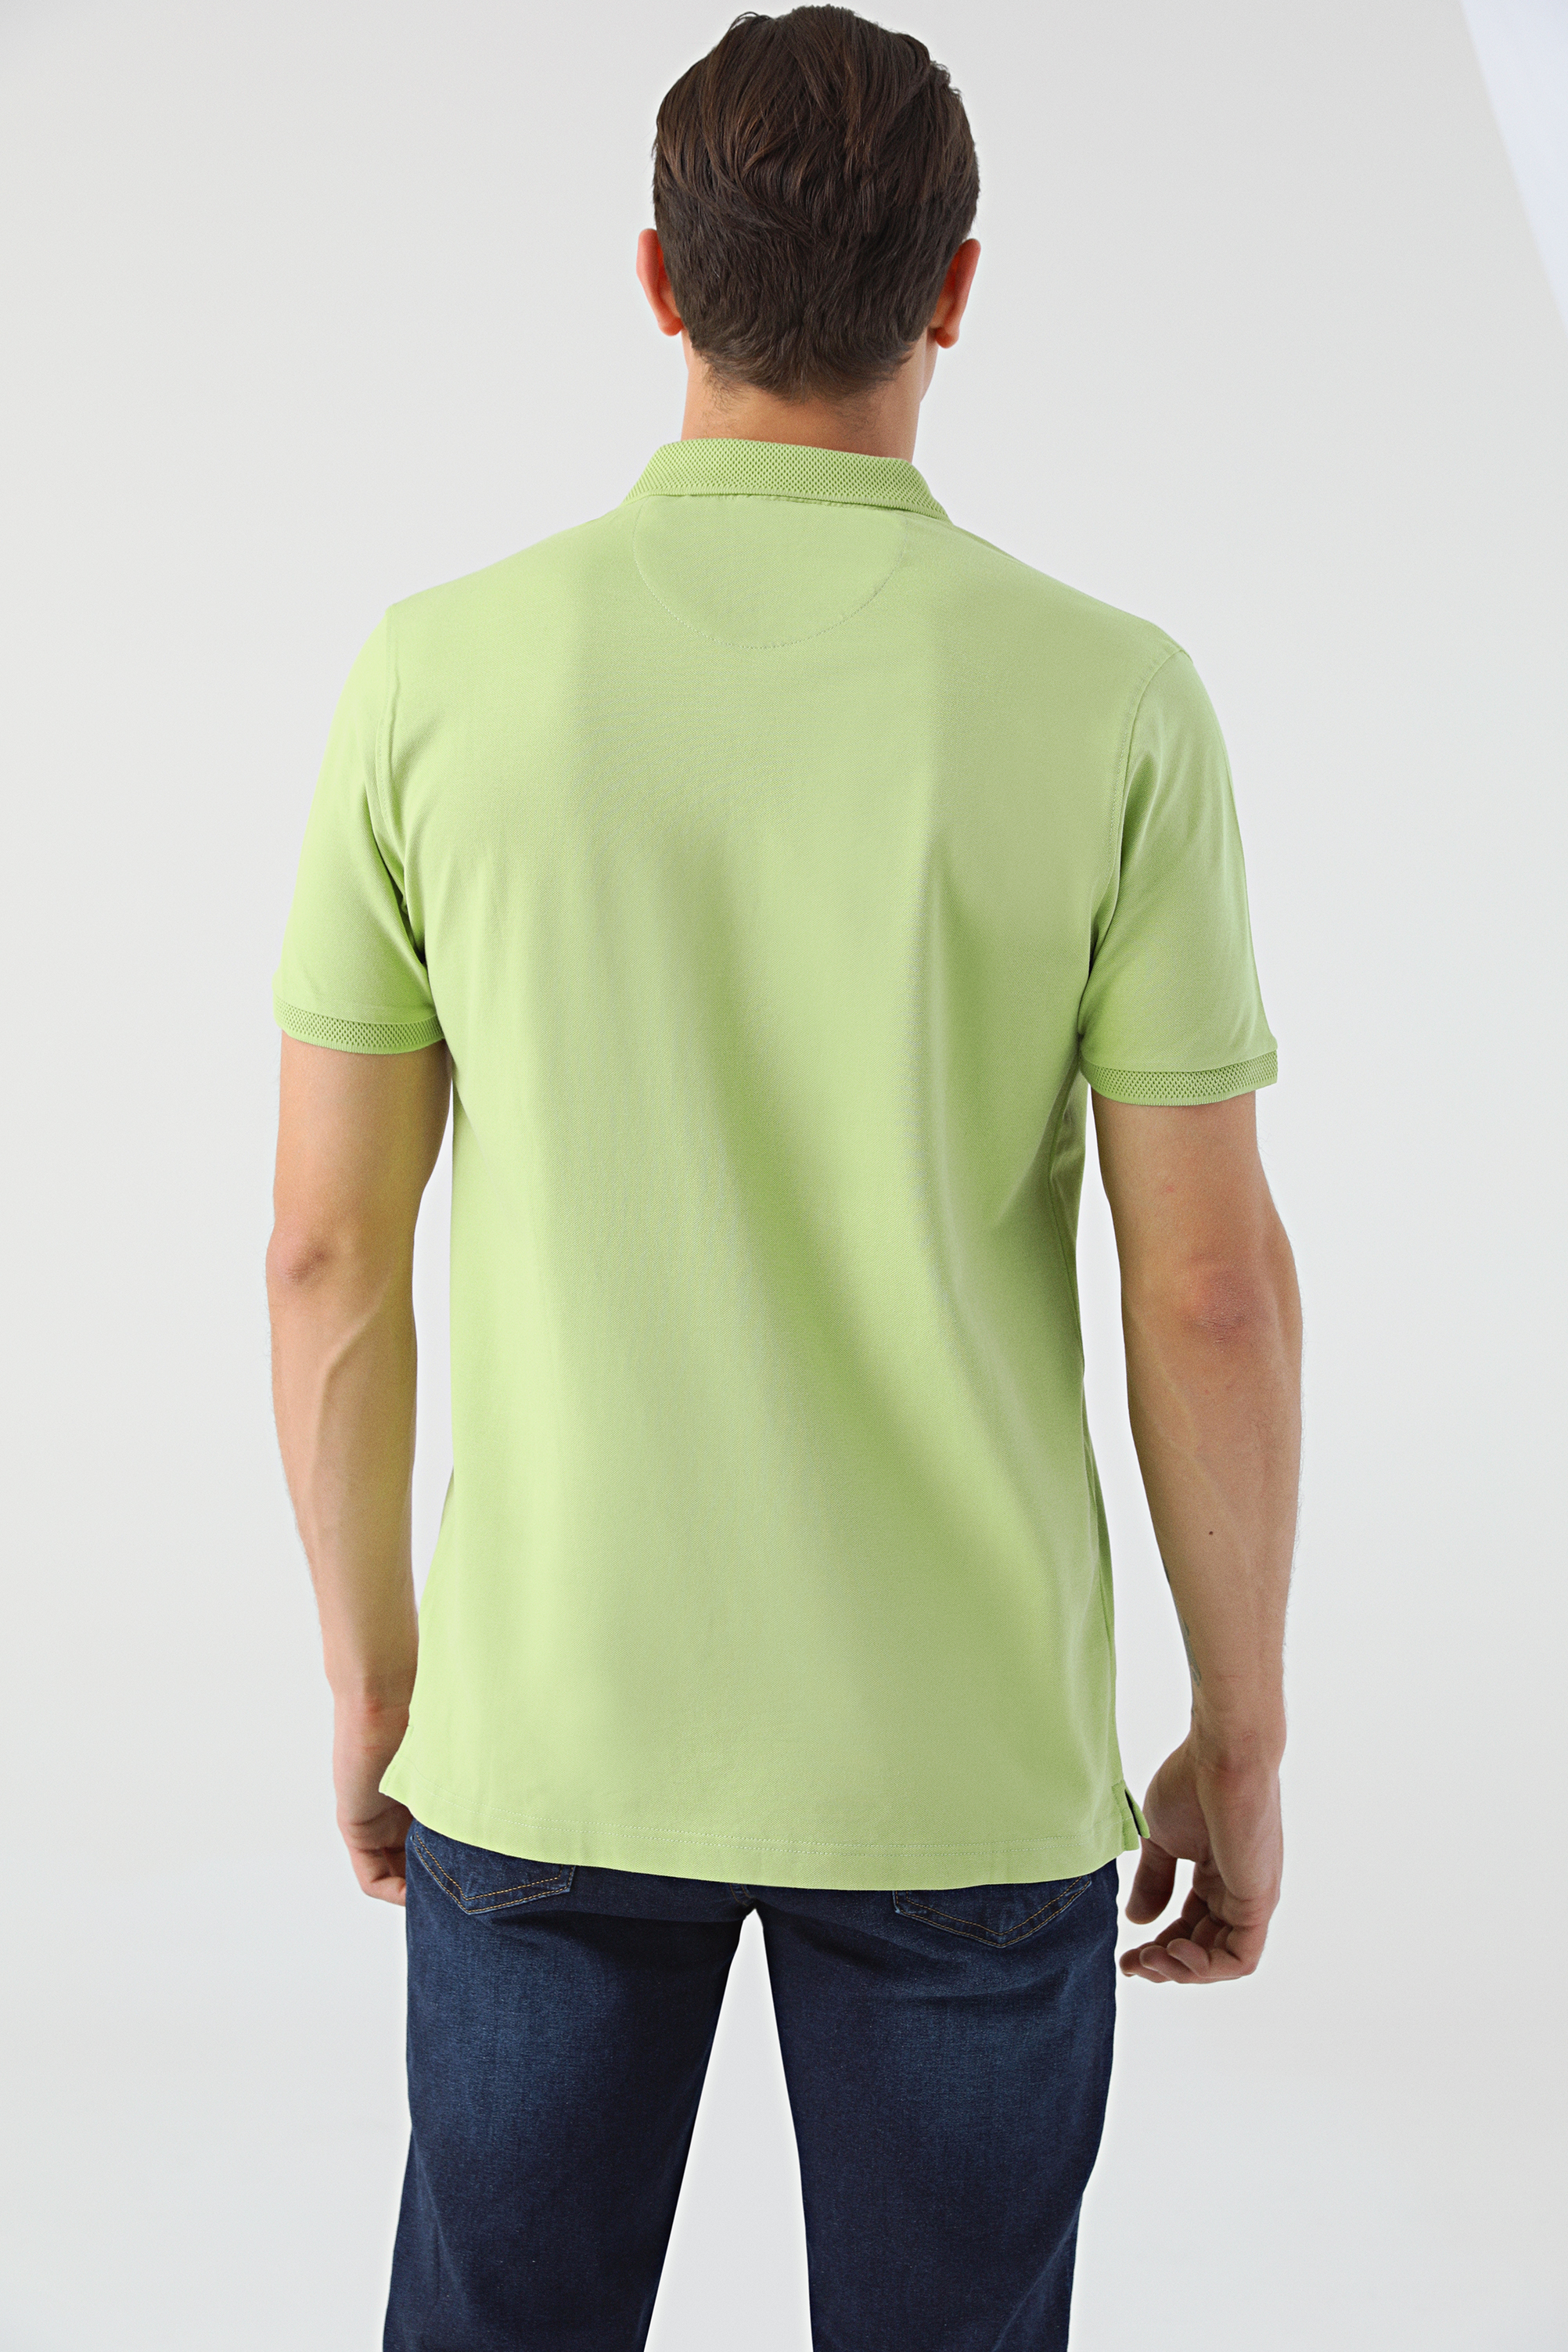 Damat Tween Tween Yeşil Nakışlı %100 Pamuk T-Shirt. 4